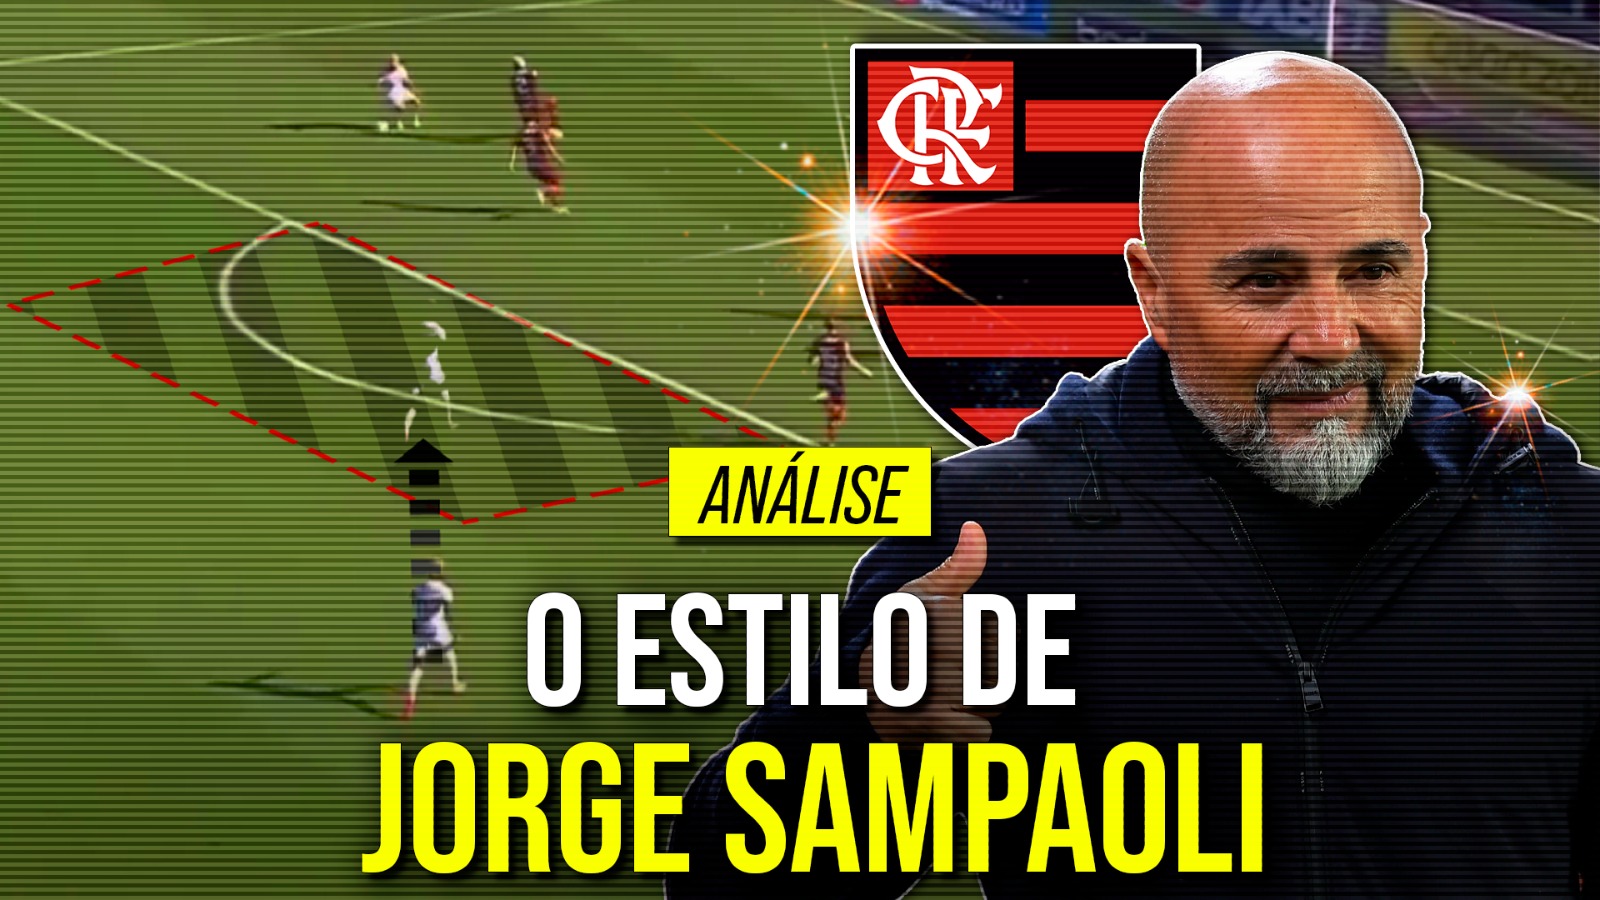 Conheça a tática de Jorge Sampaoli, novo técnico do Flamengo